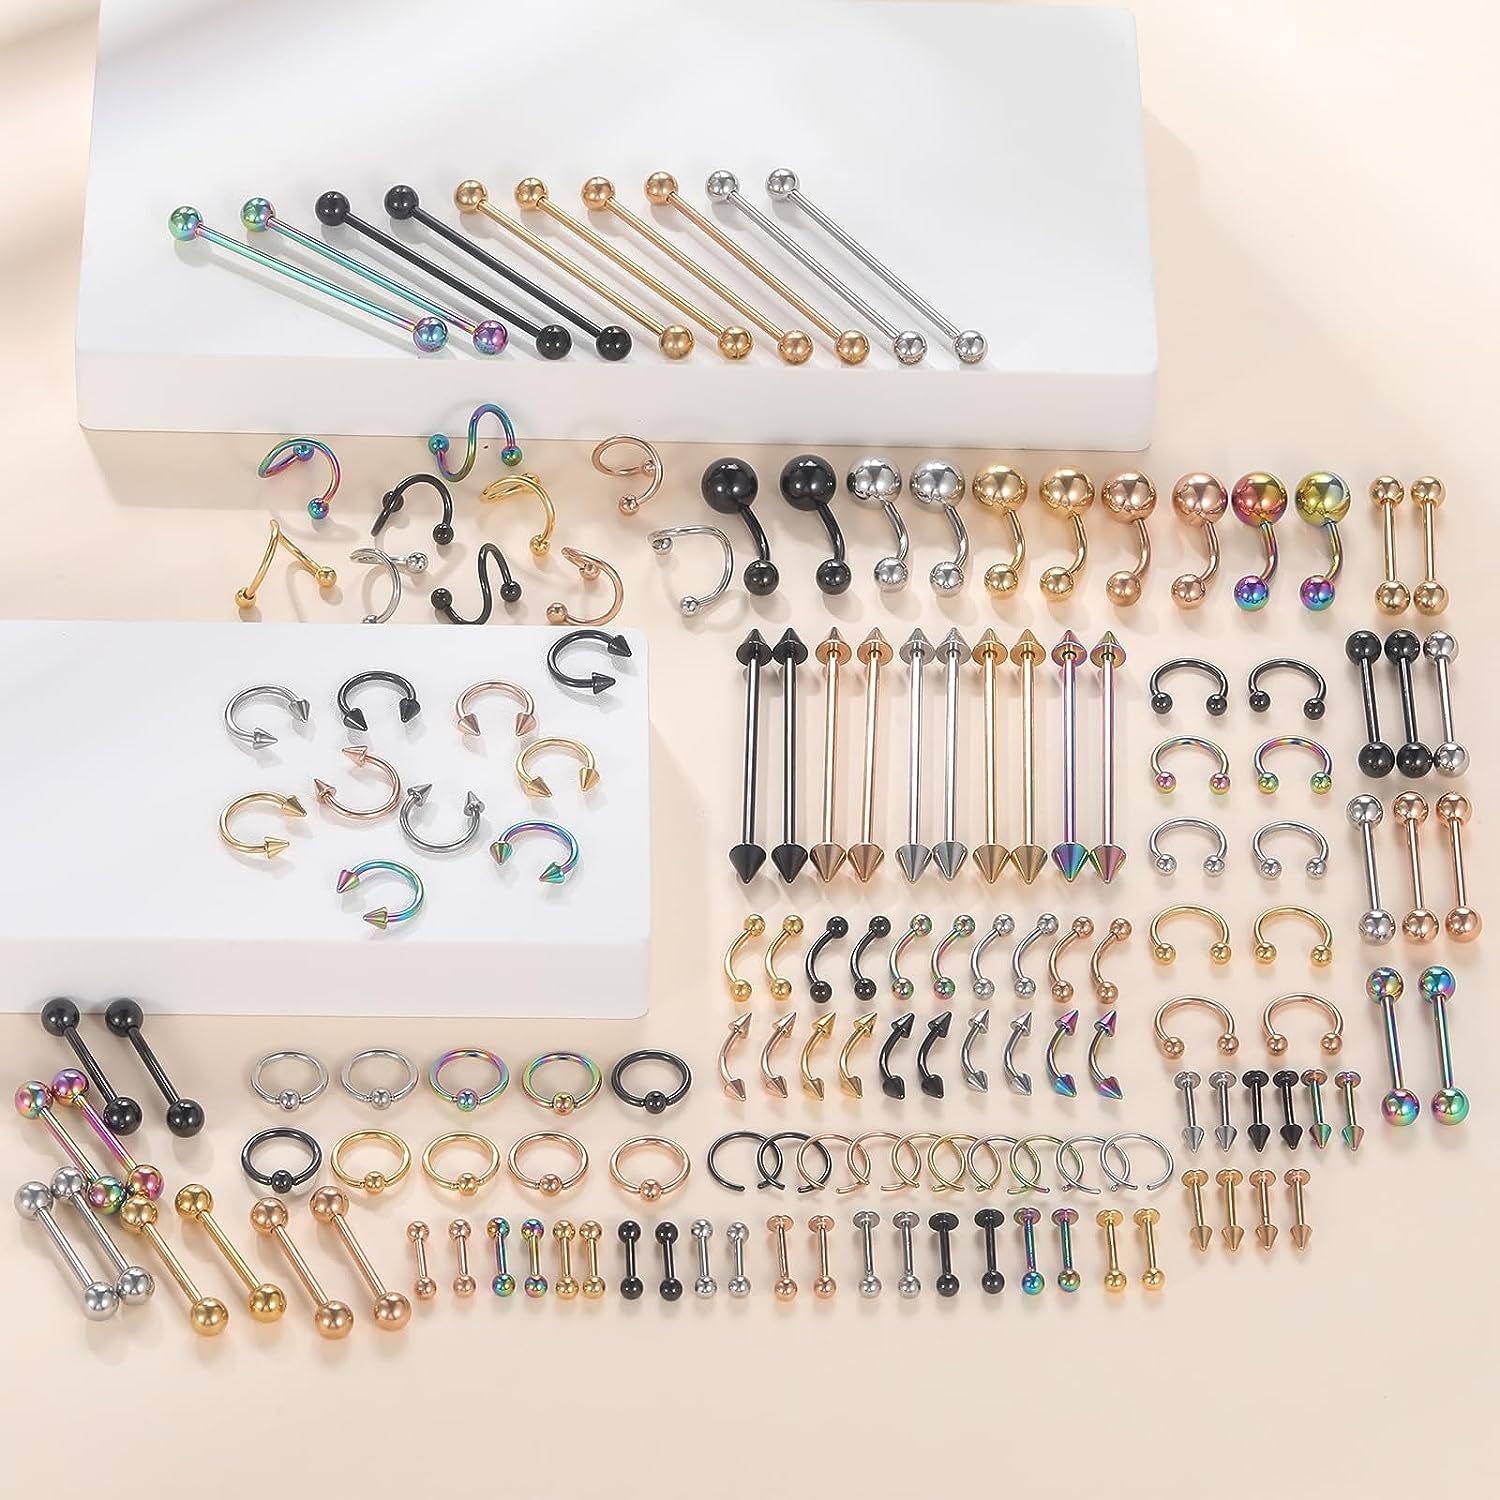 Buy Xpircn 150PCS Piercing Kit - Stainless Steel Body Jewelry Set | Elegance Jewelry